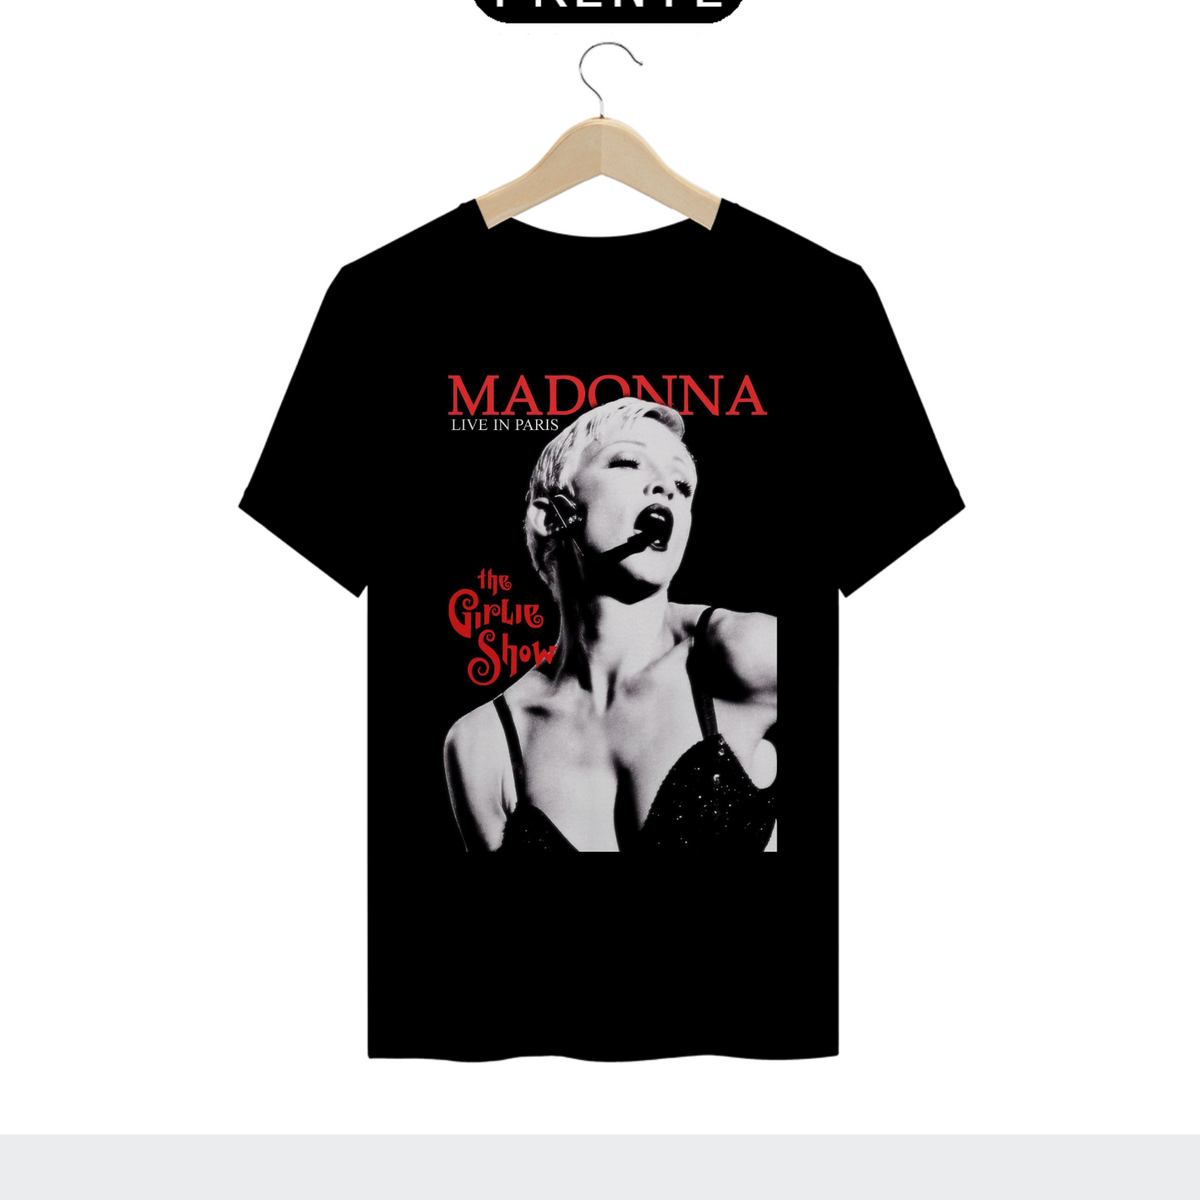 Nome do produto: Madonna